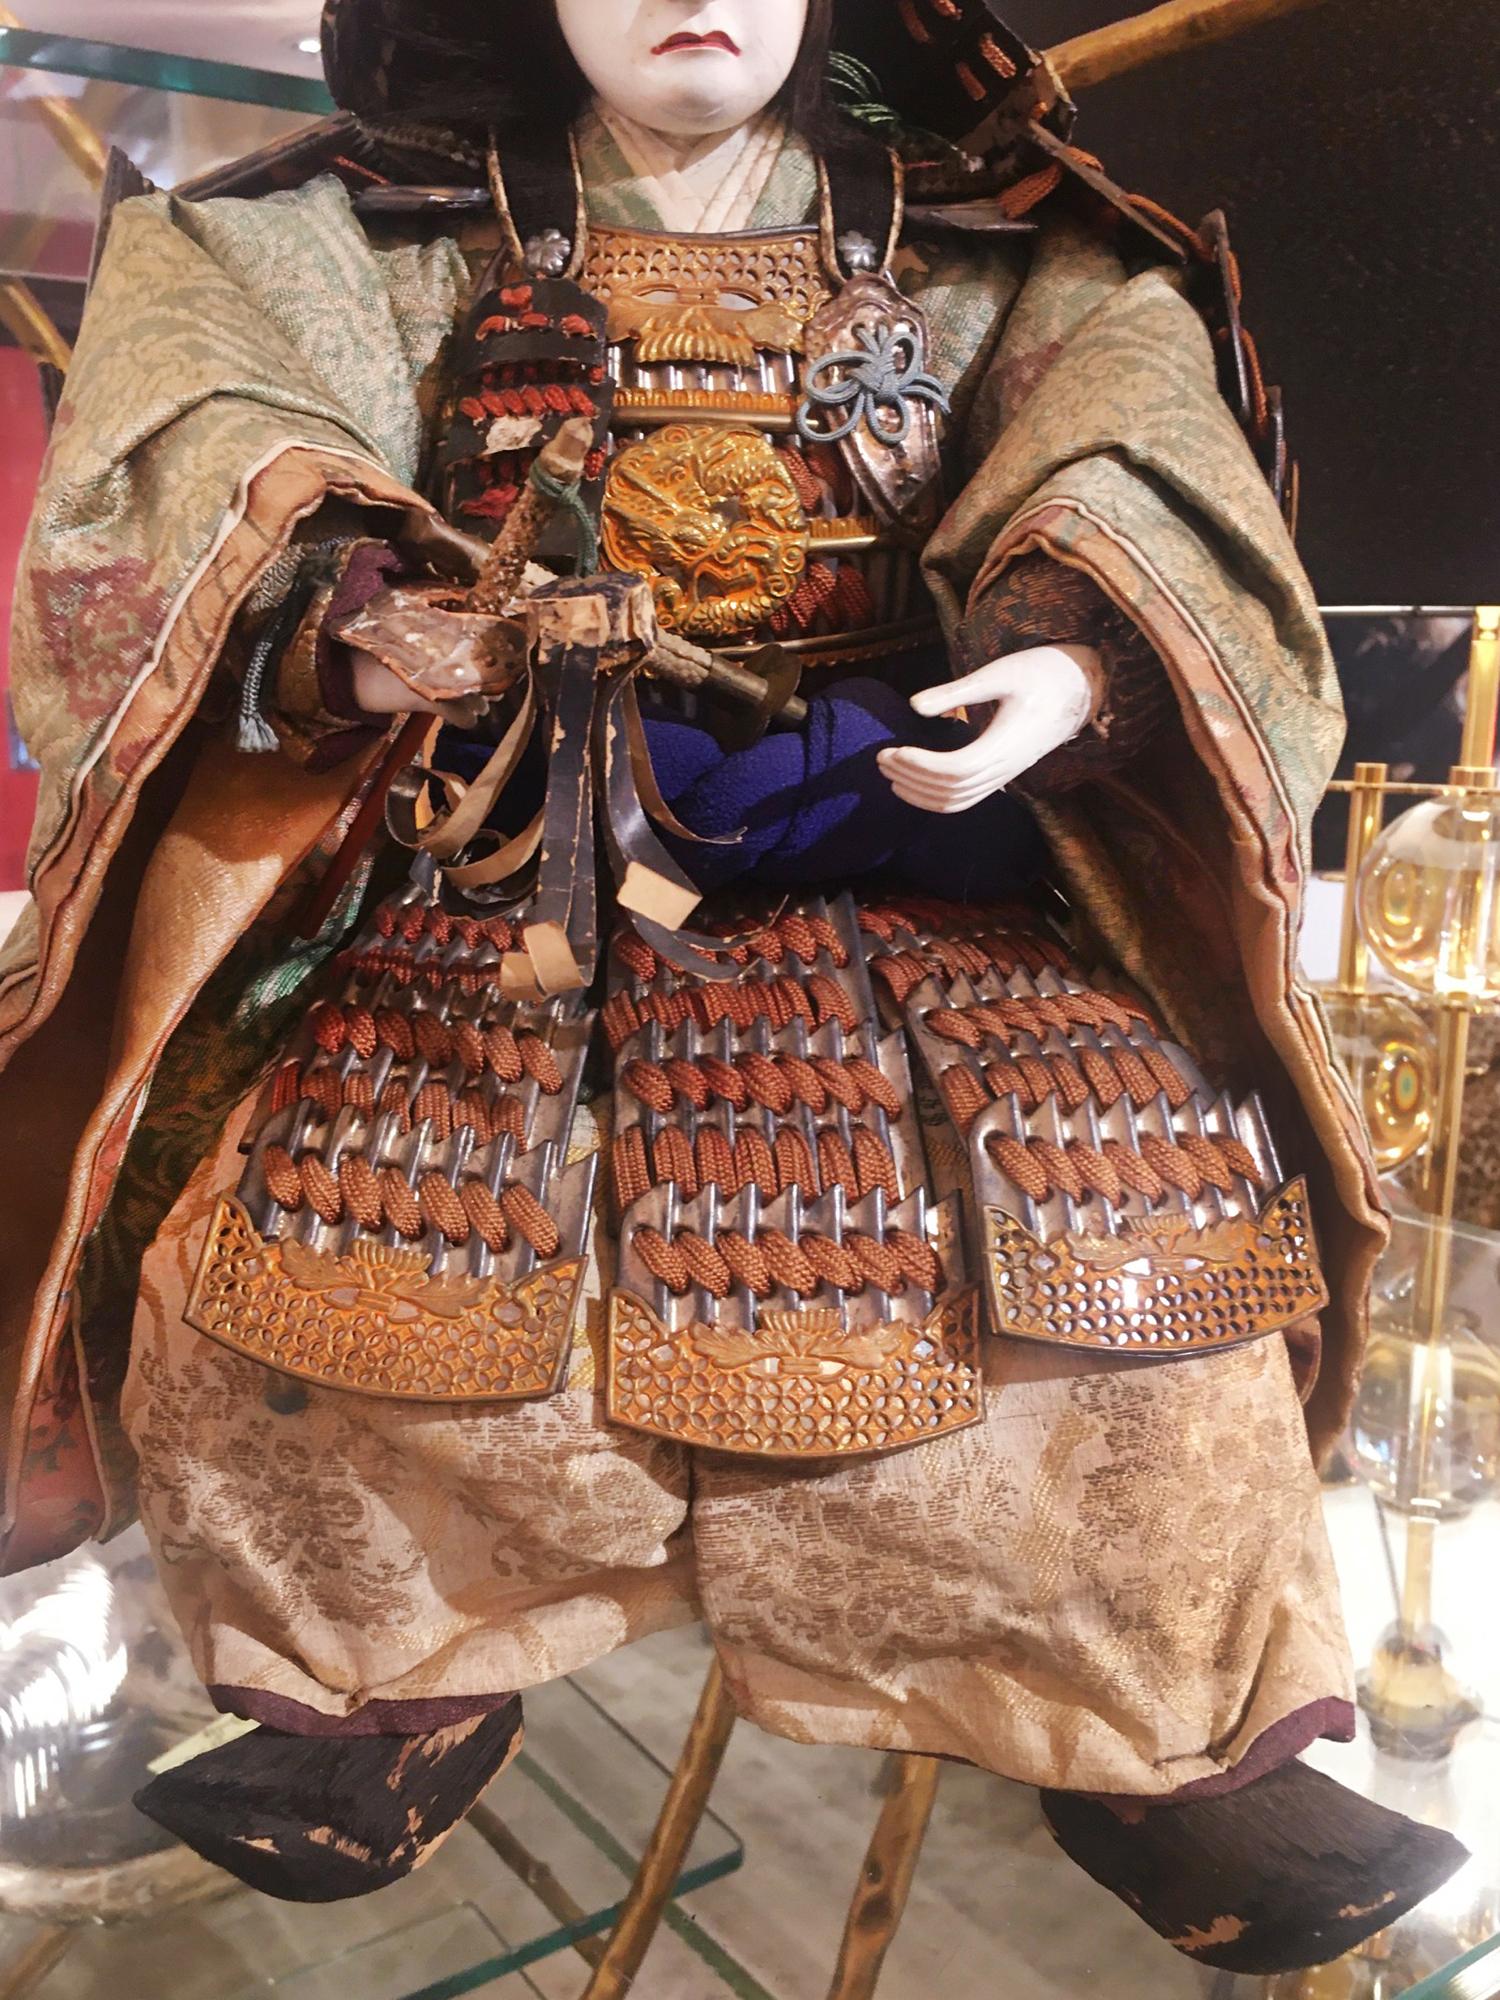 samurai puppet